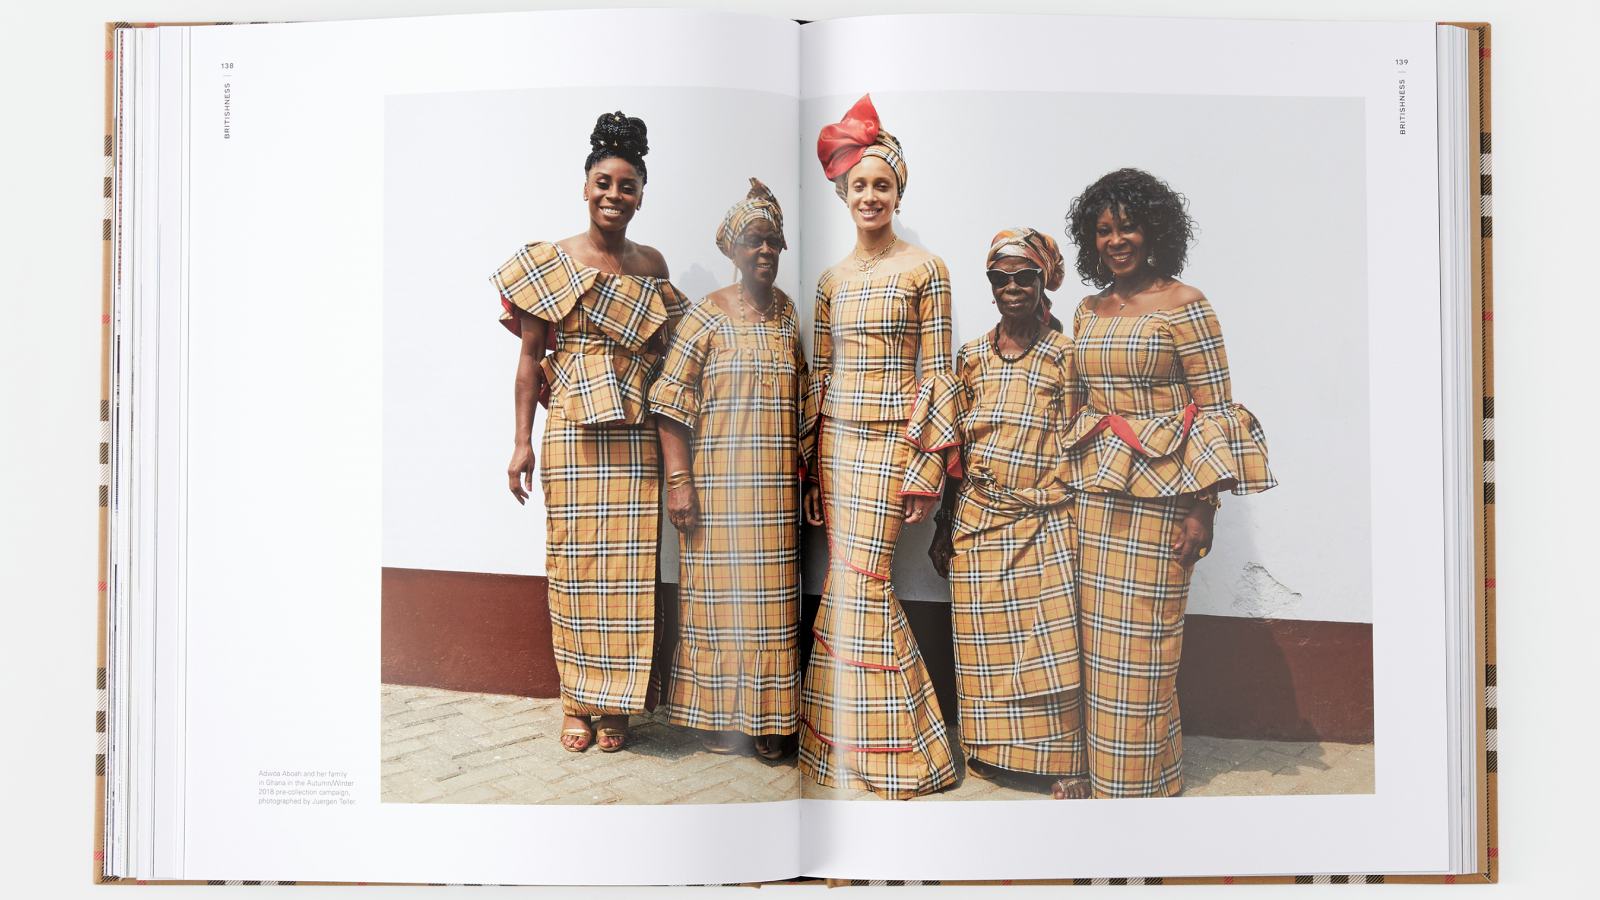 La modelo británica Adwoa Aboah y su familia posa durante la campaña de la colección otoño/invierno 2018. Fotografiadas por Juergen Teller en Ghana. Páginas 138 y 139. - imagen 5